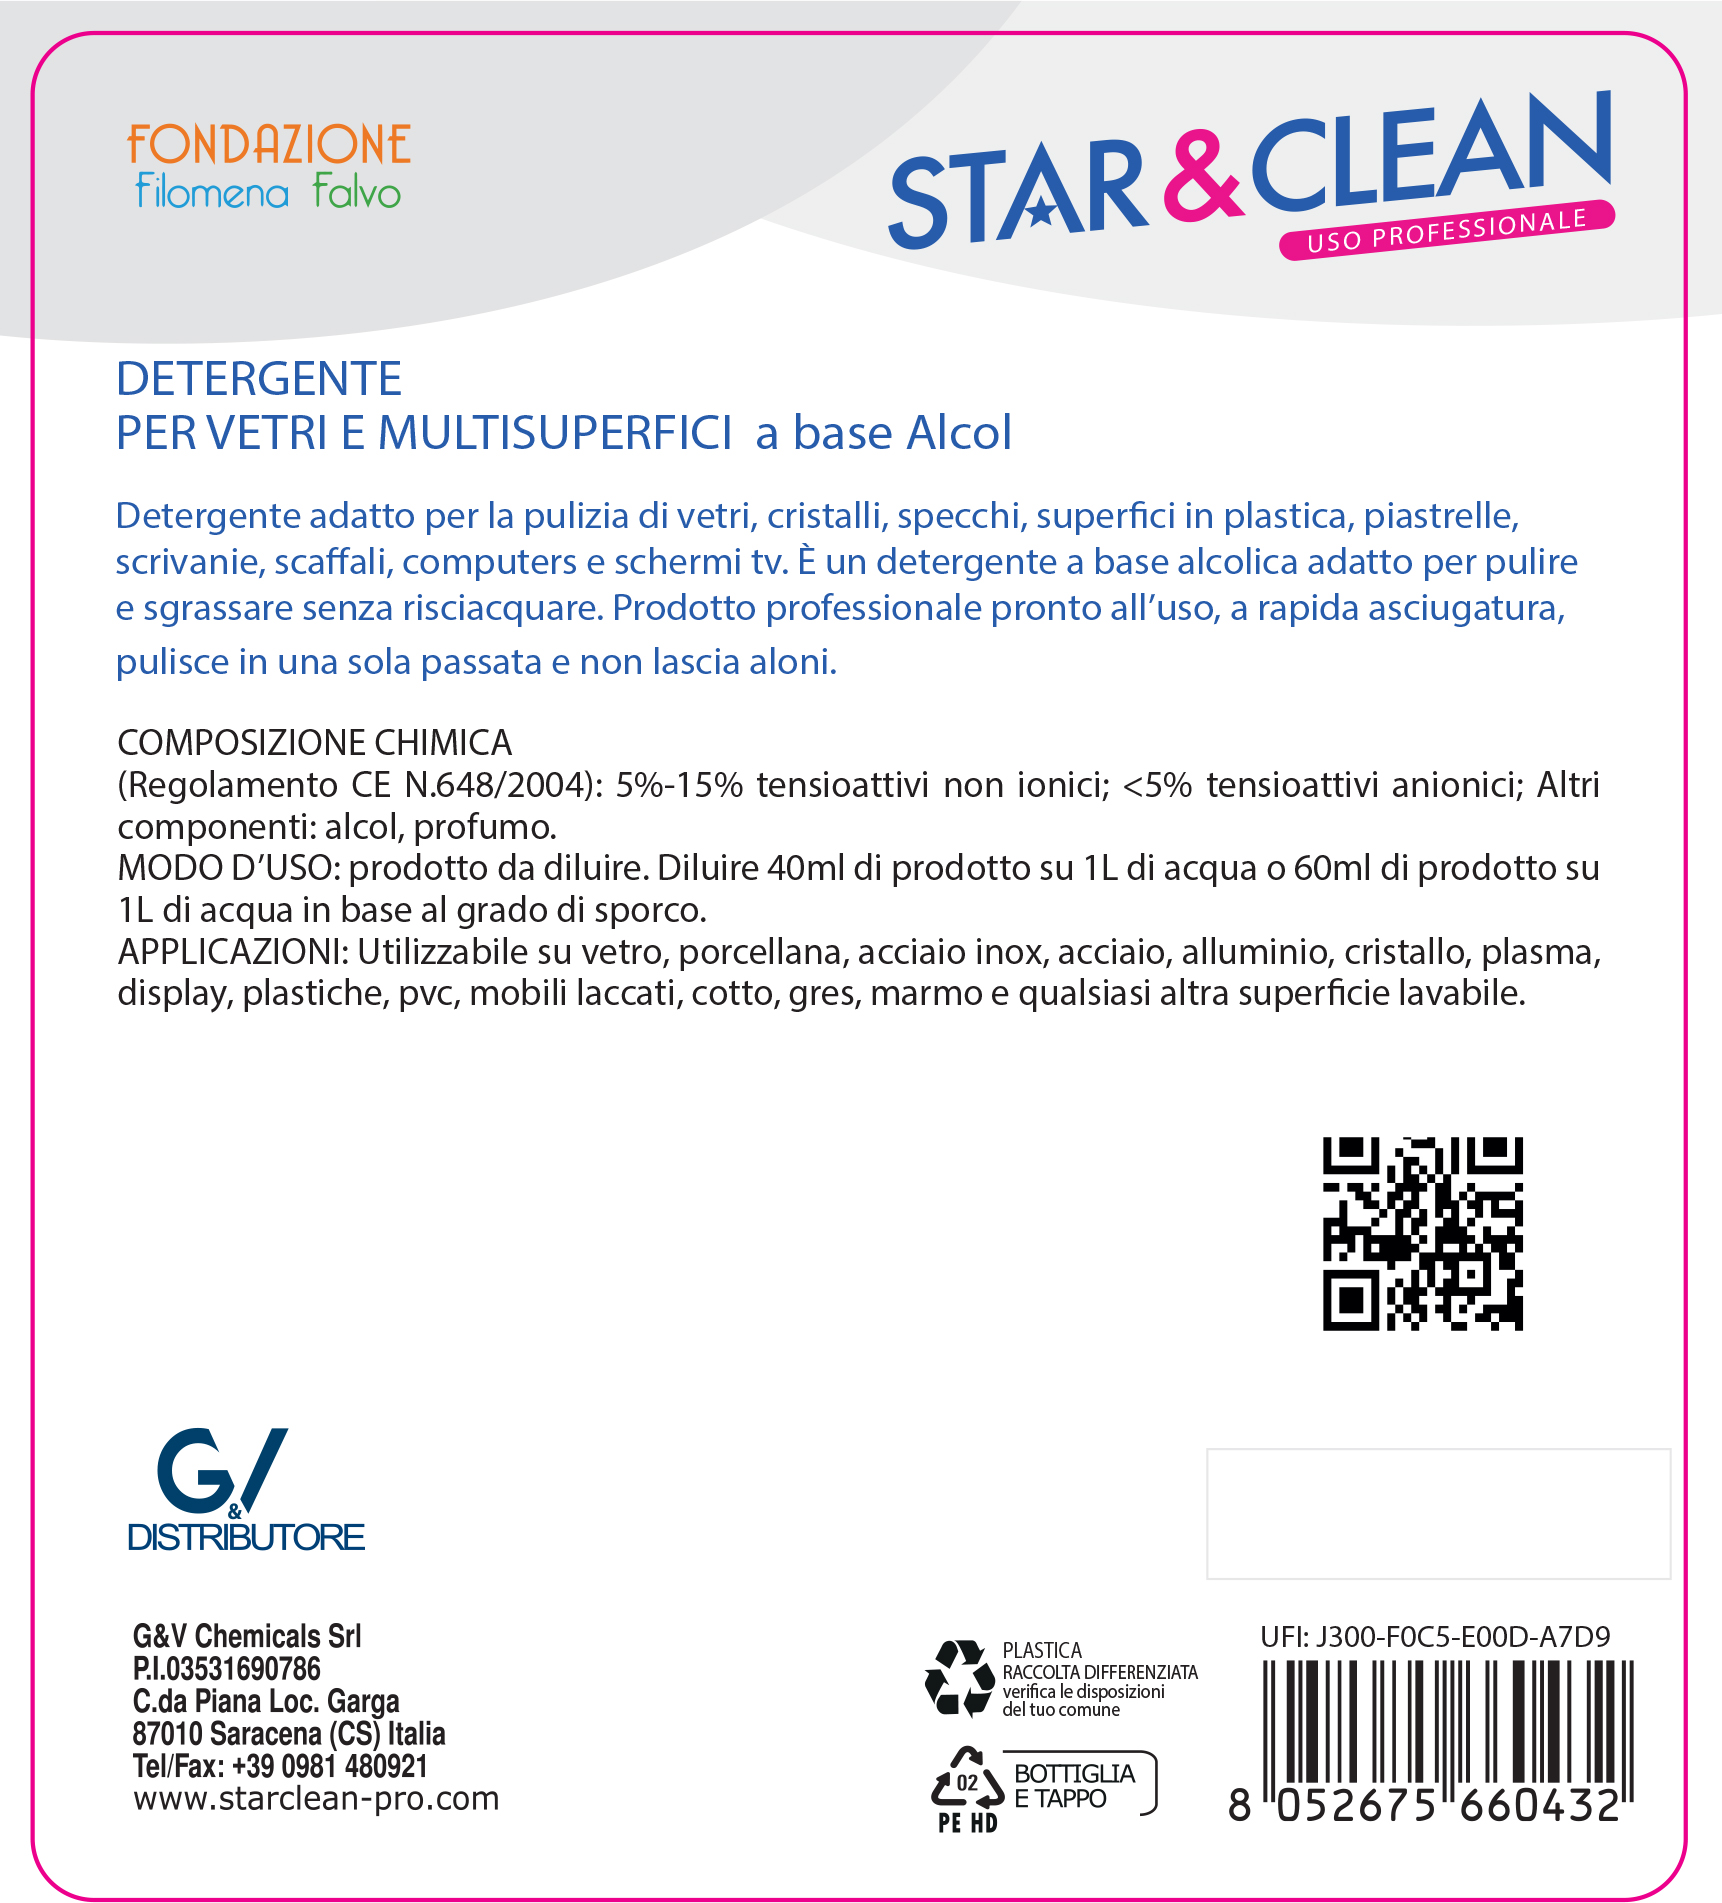 Detersivi concentrati - star clean 301 - detergente per vetri emultisuperfici